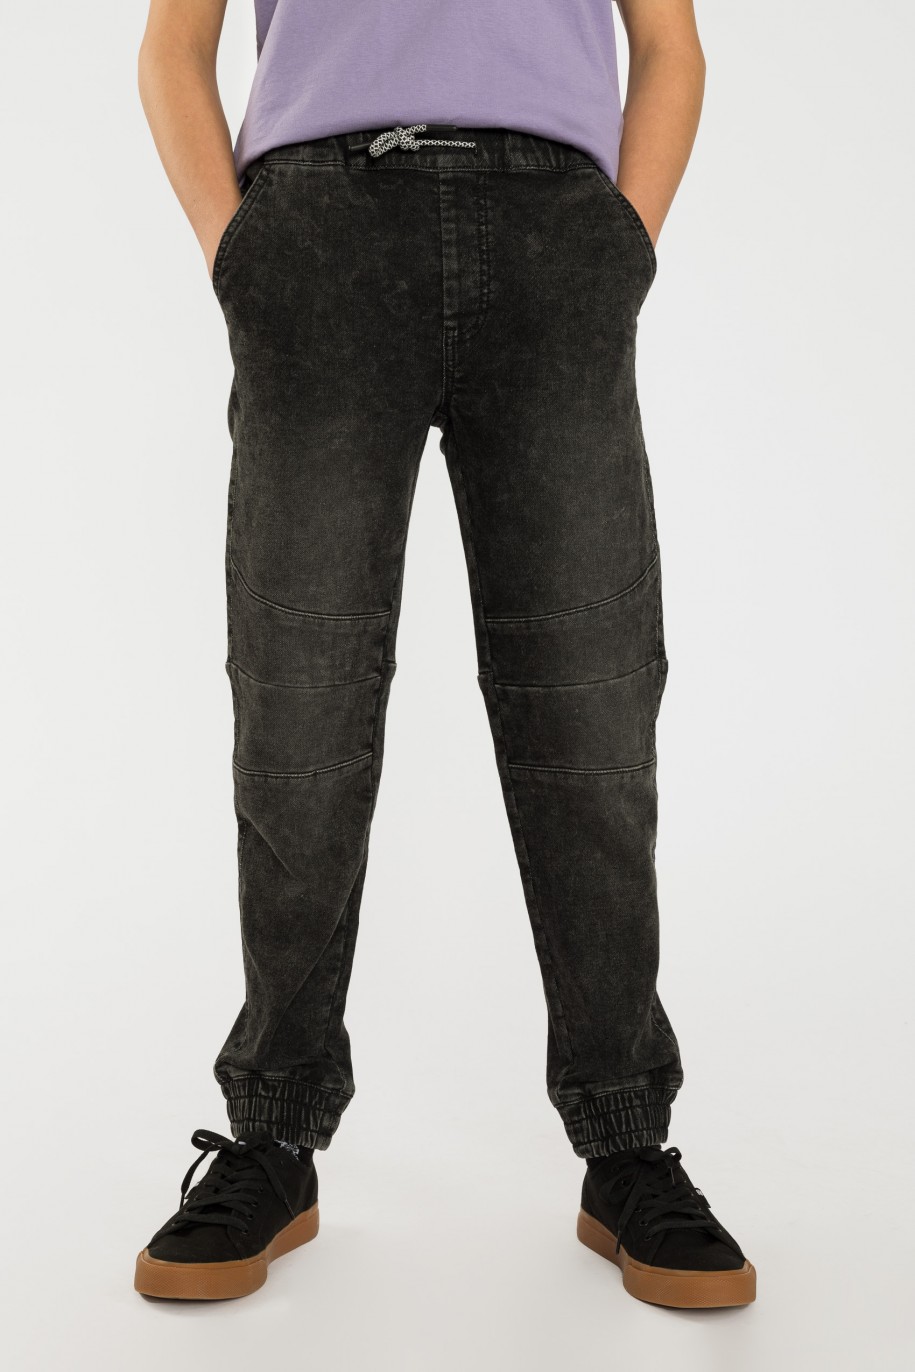 Szare jeansy typu jogger z przeszyciami - 40577